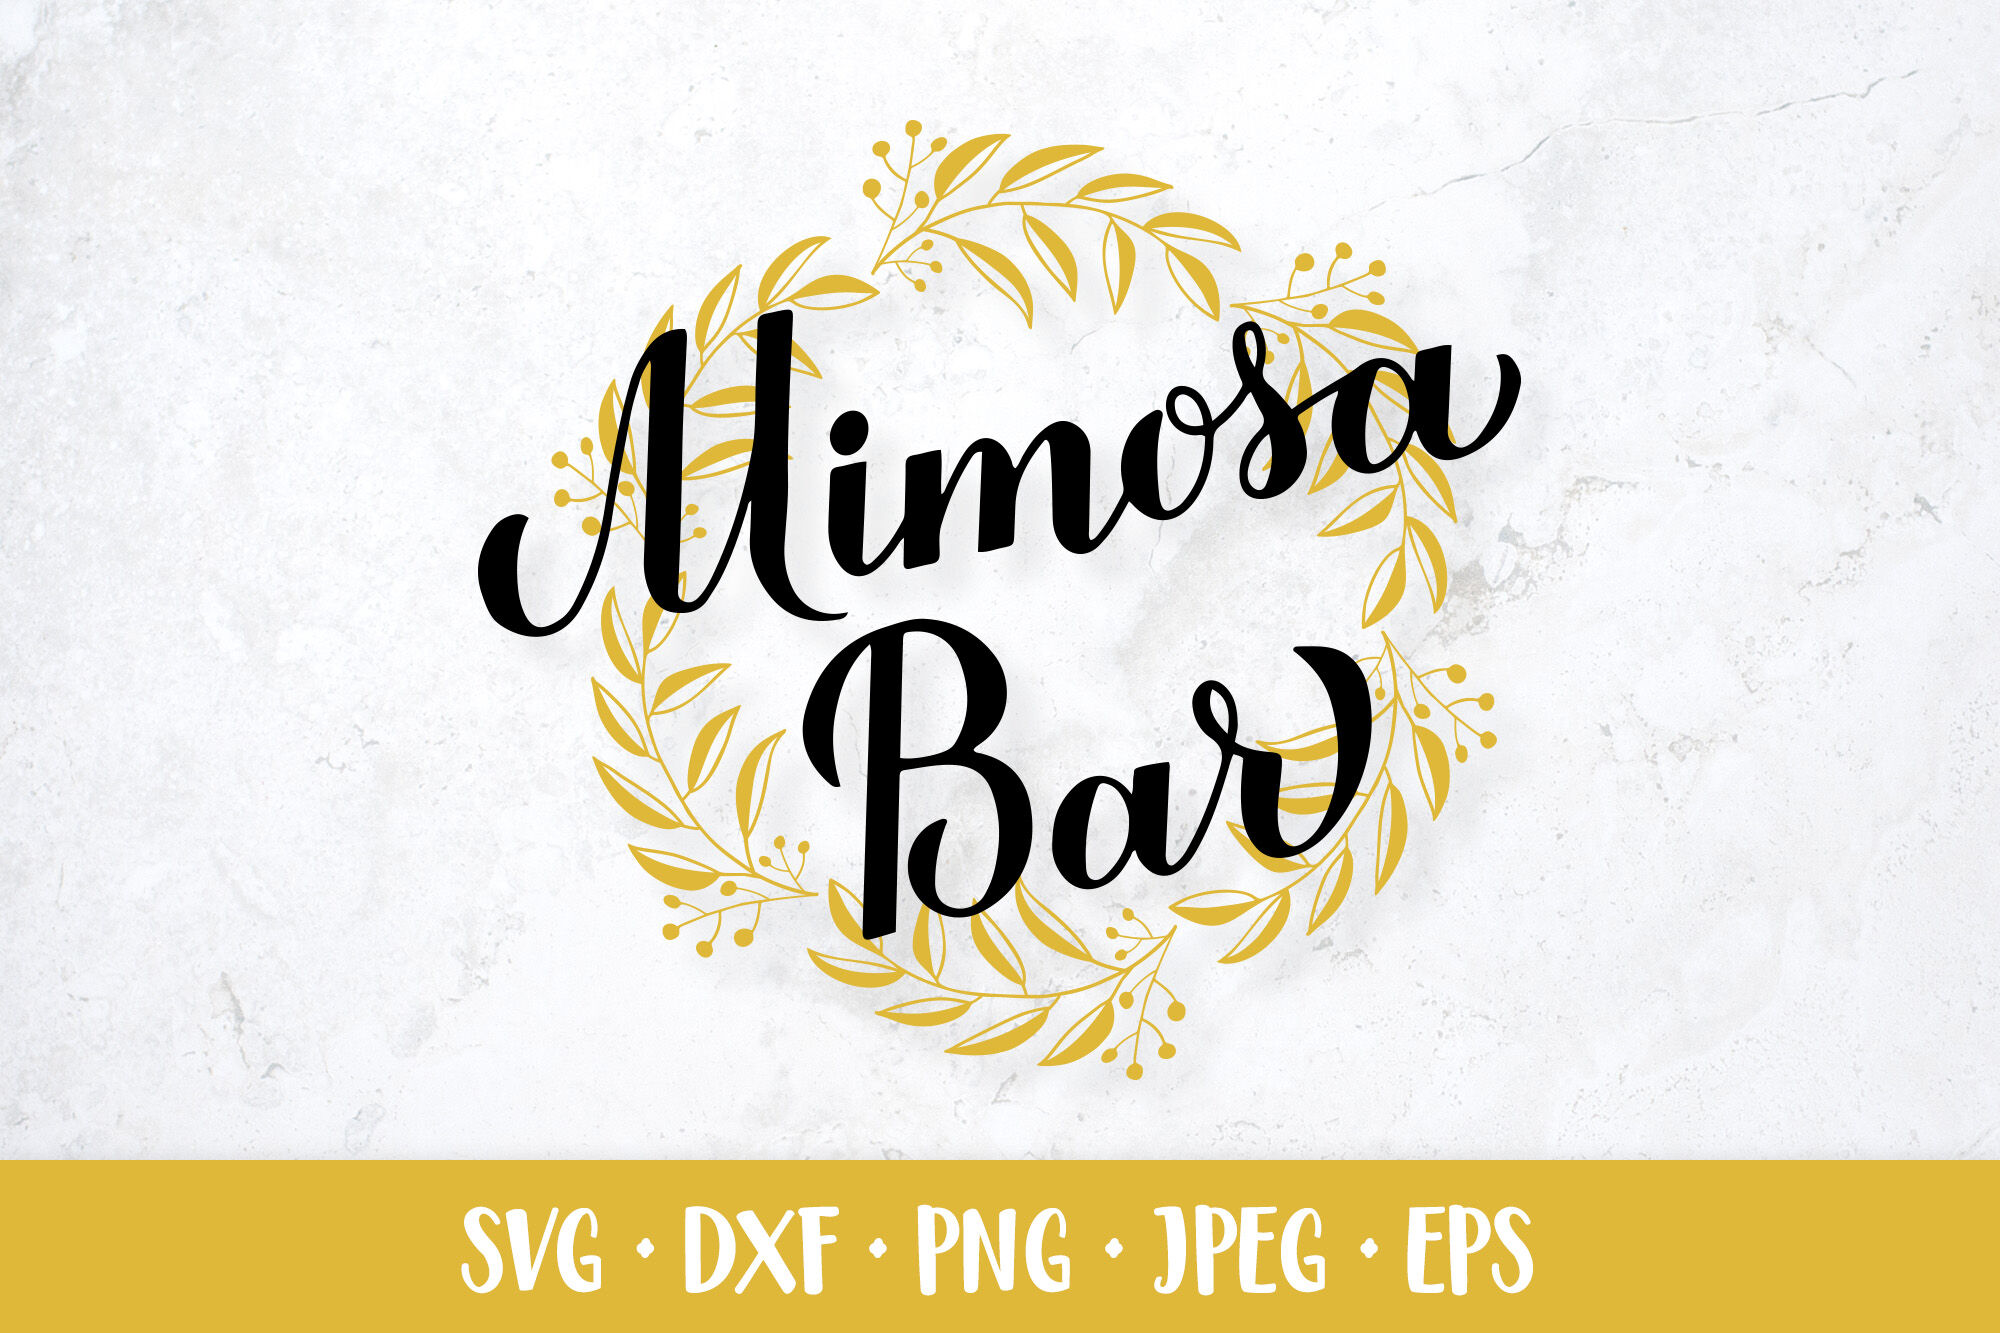 Mimosa Bar Sign